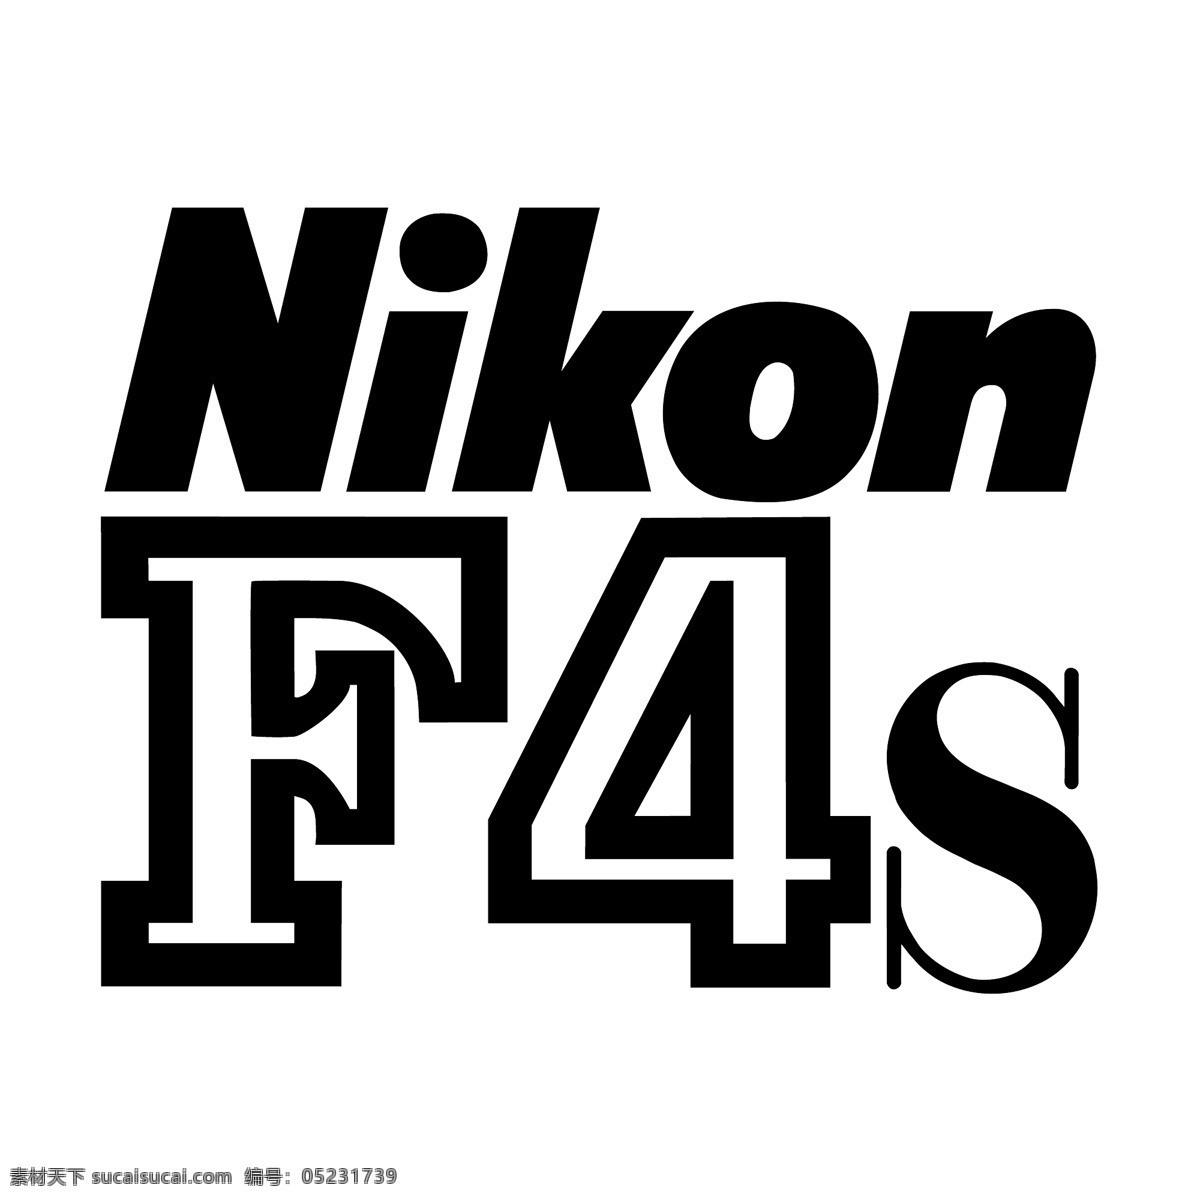 尼康 艺术设计 尼康f4 f4 矢量 自由 向量 向量尼康标志 标志 艺术 载体 eps文件 矢量图 建筑家居